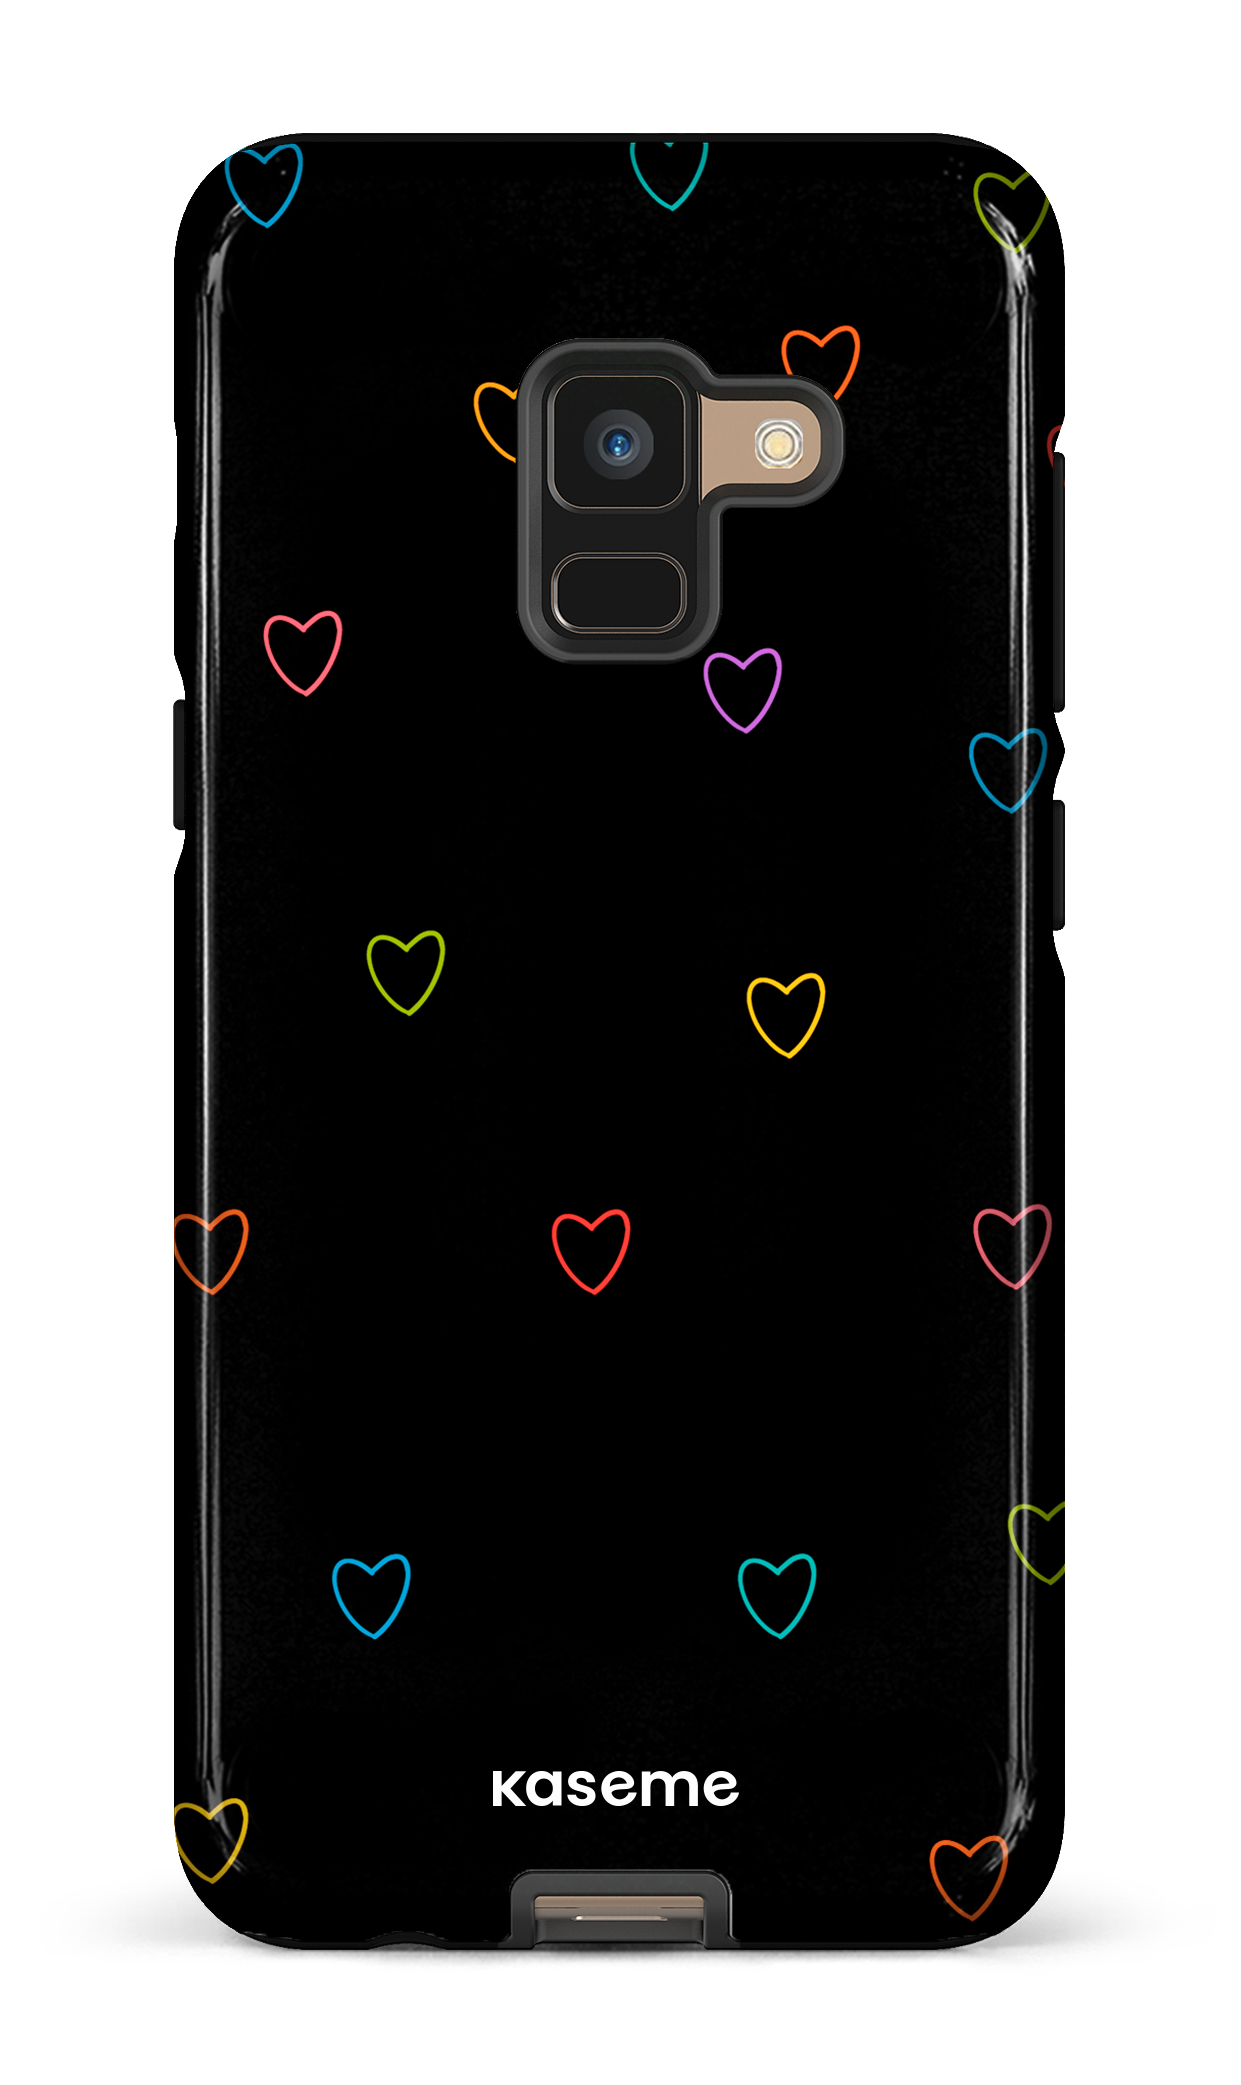 Love Wins - Galaxy A8